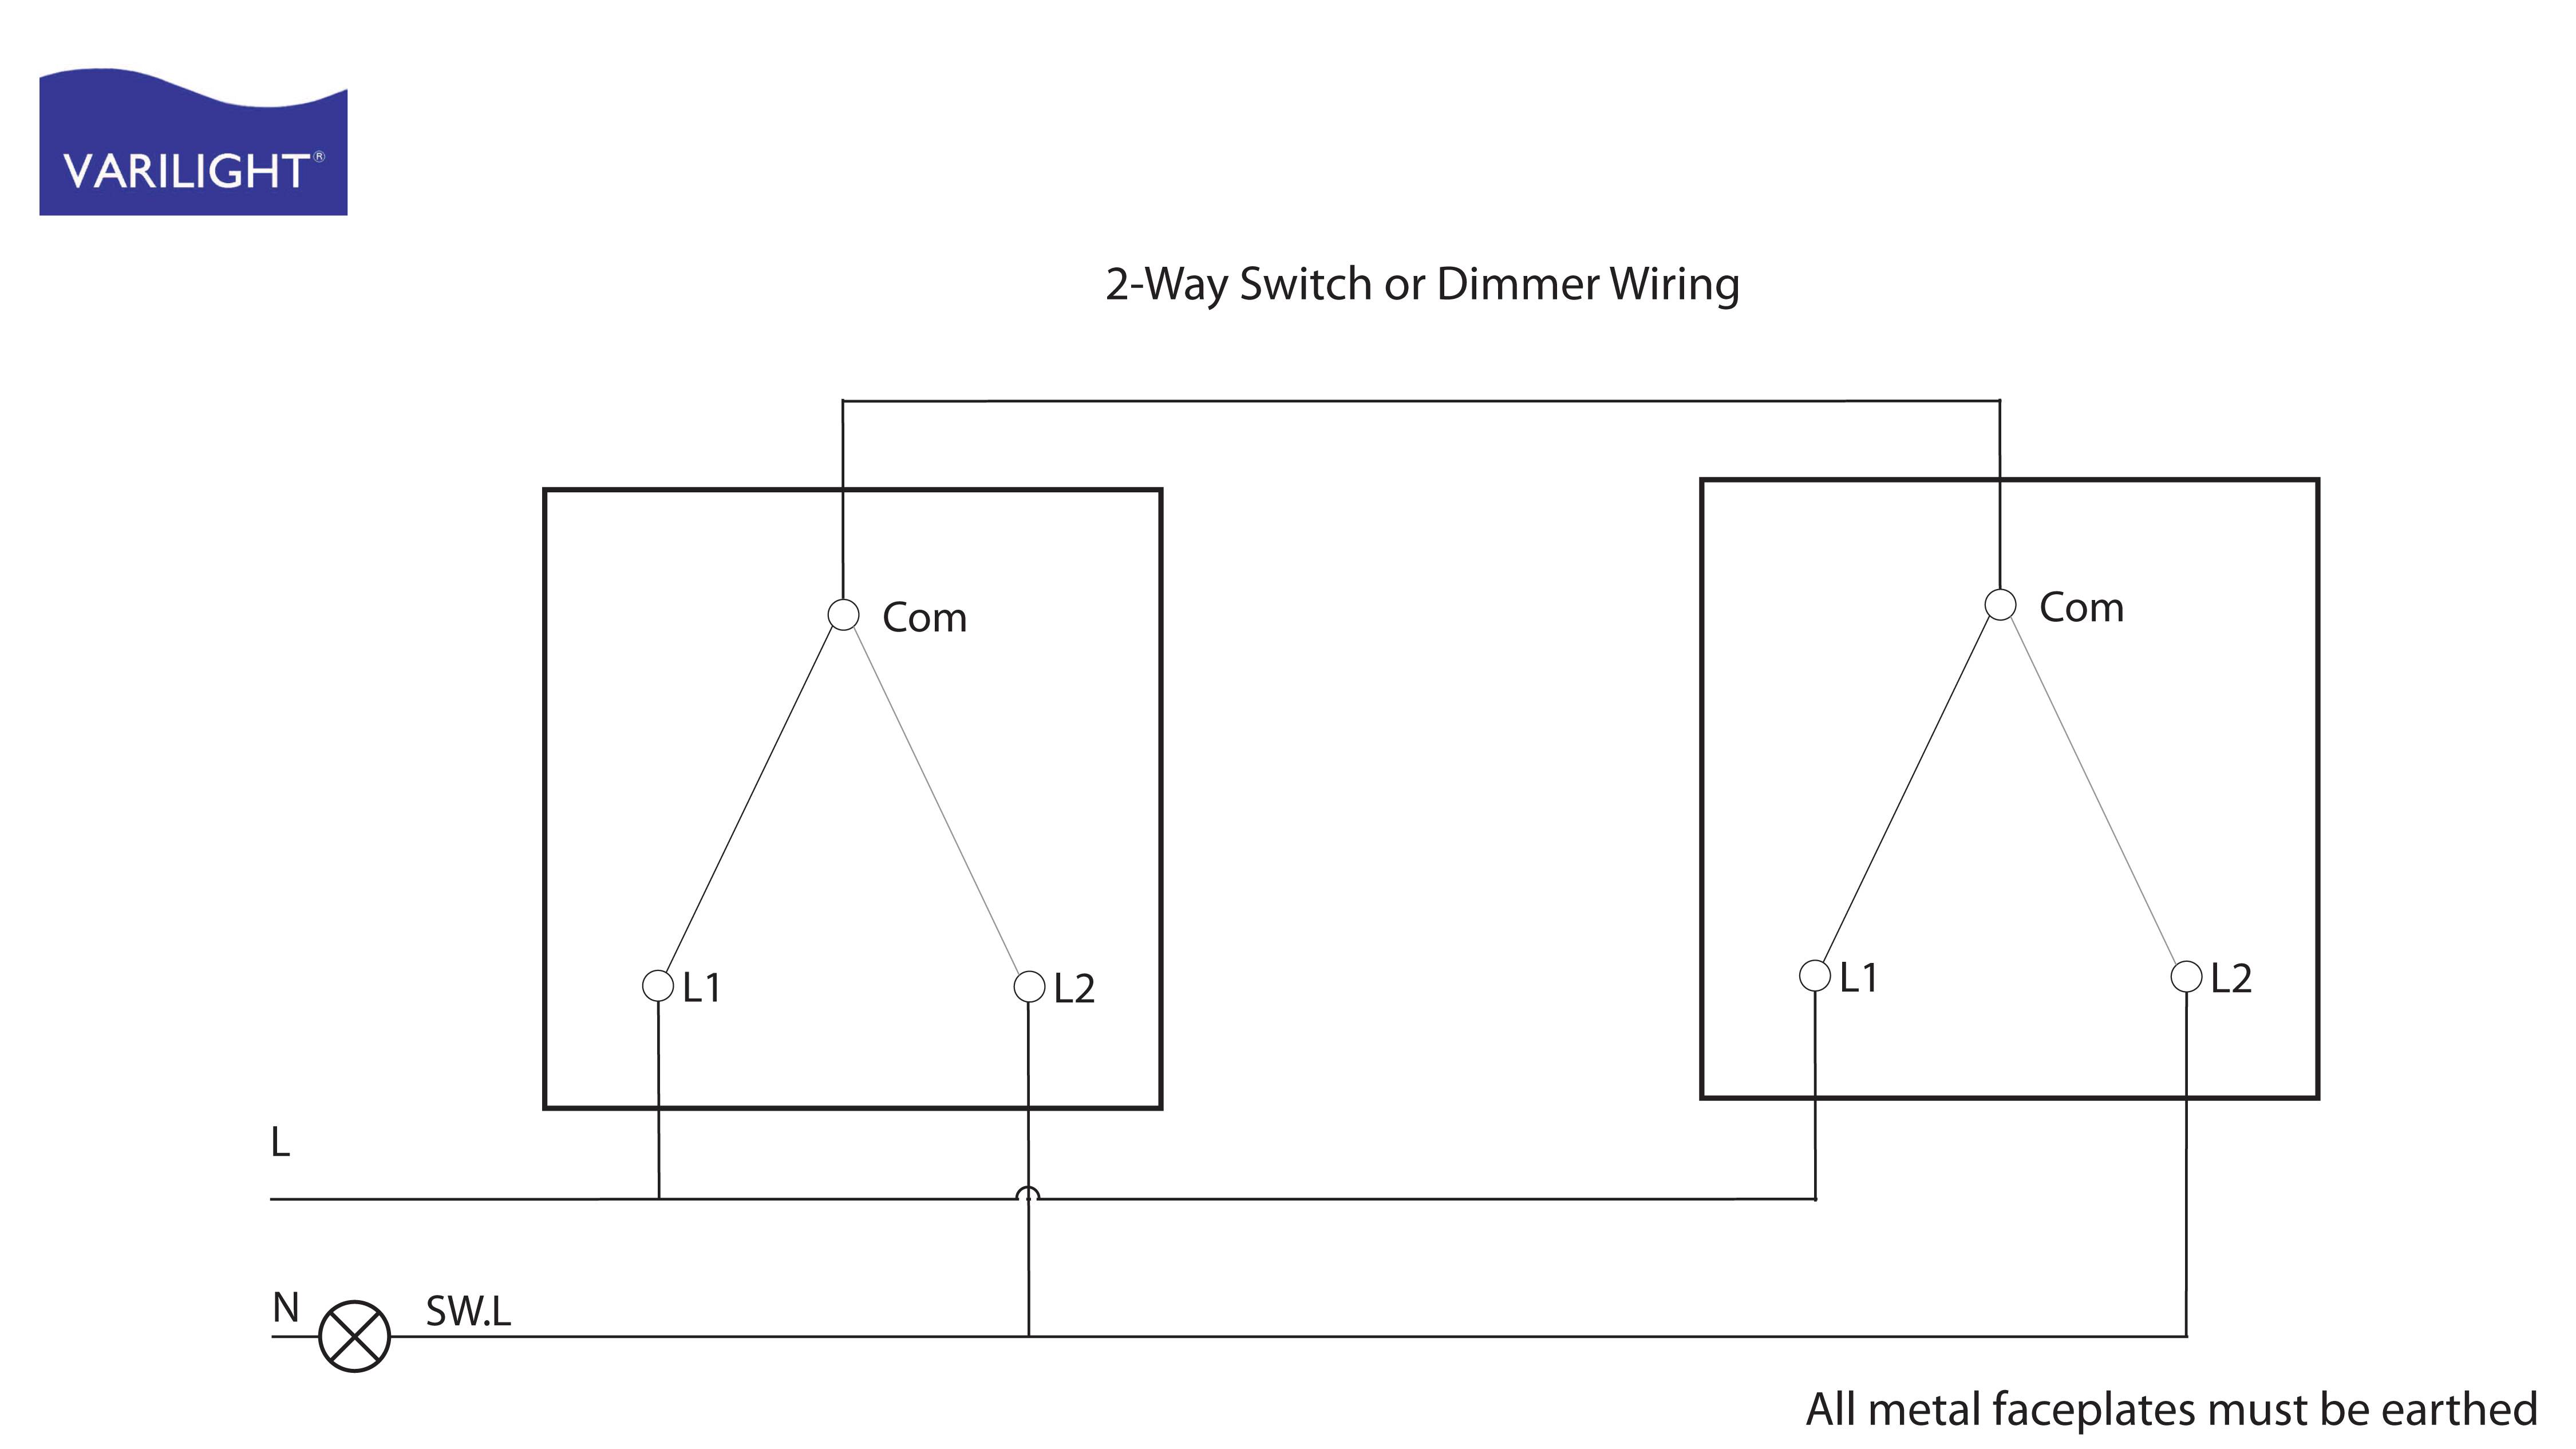 VARILIGHT Wiring Diagrams